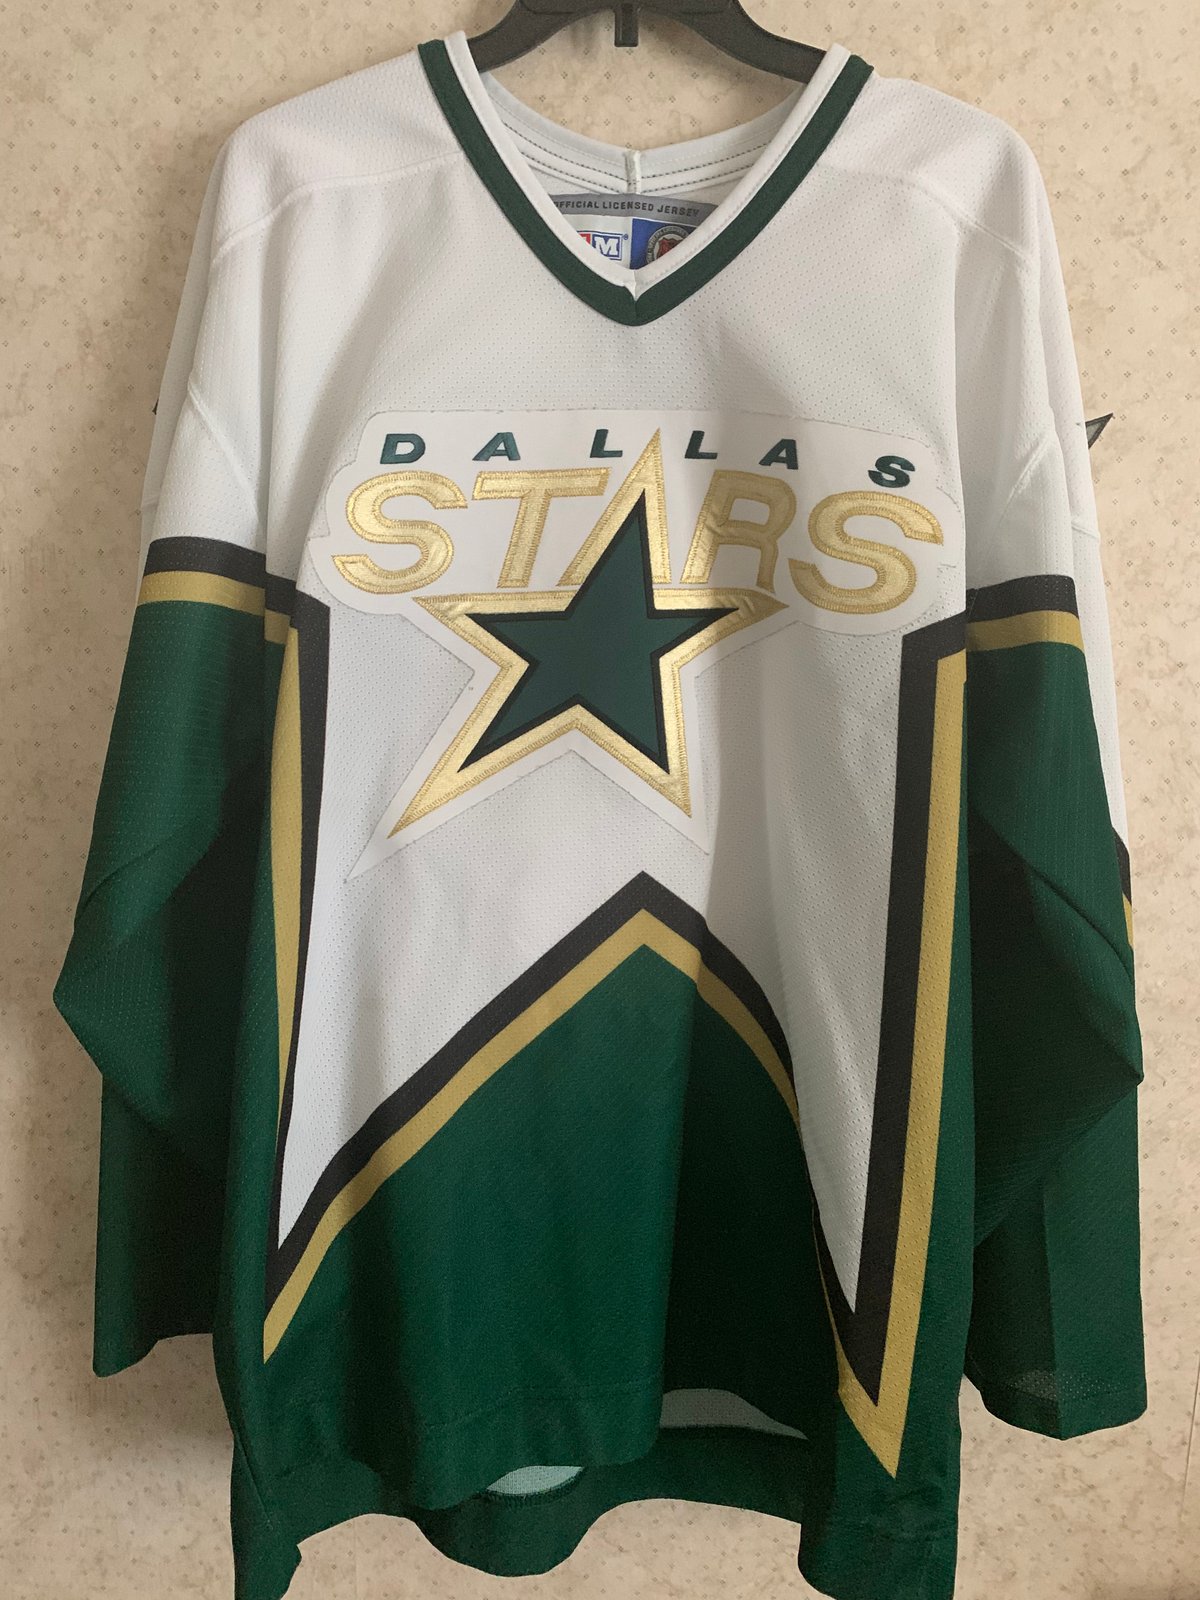 stars hockey jersey